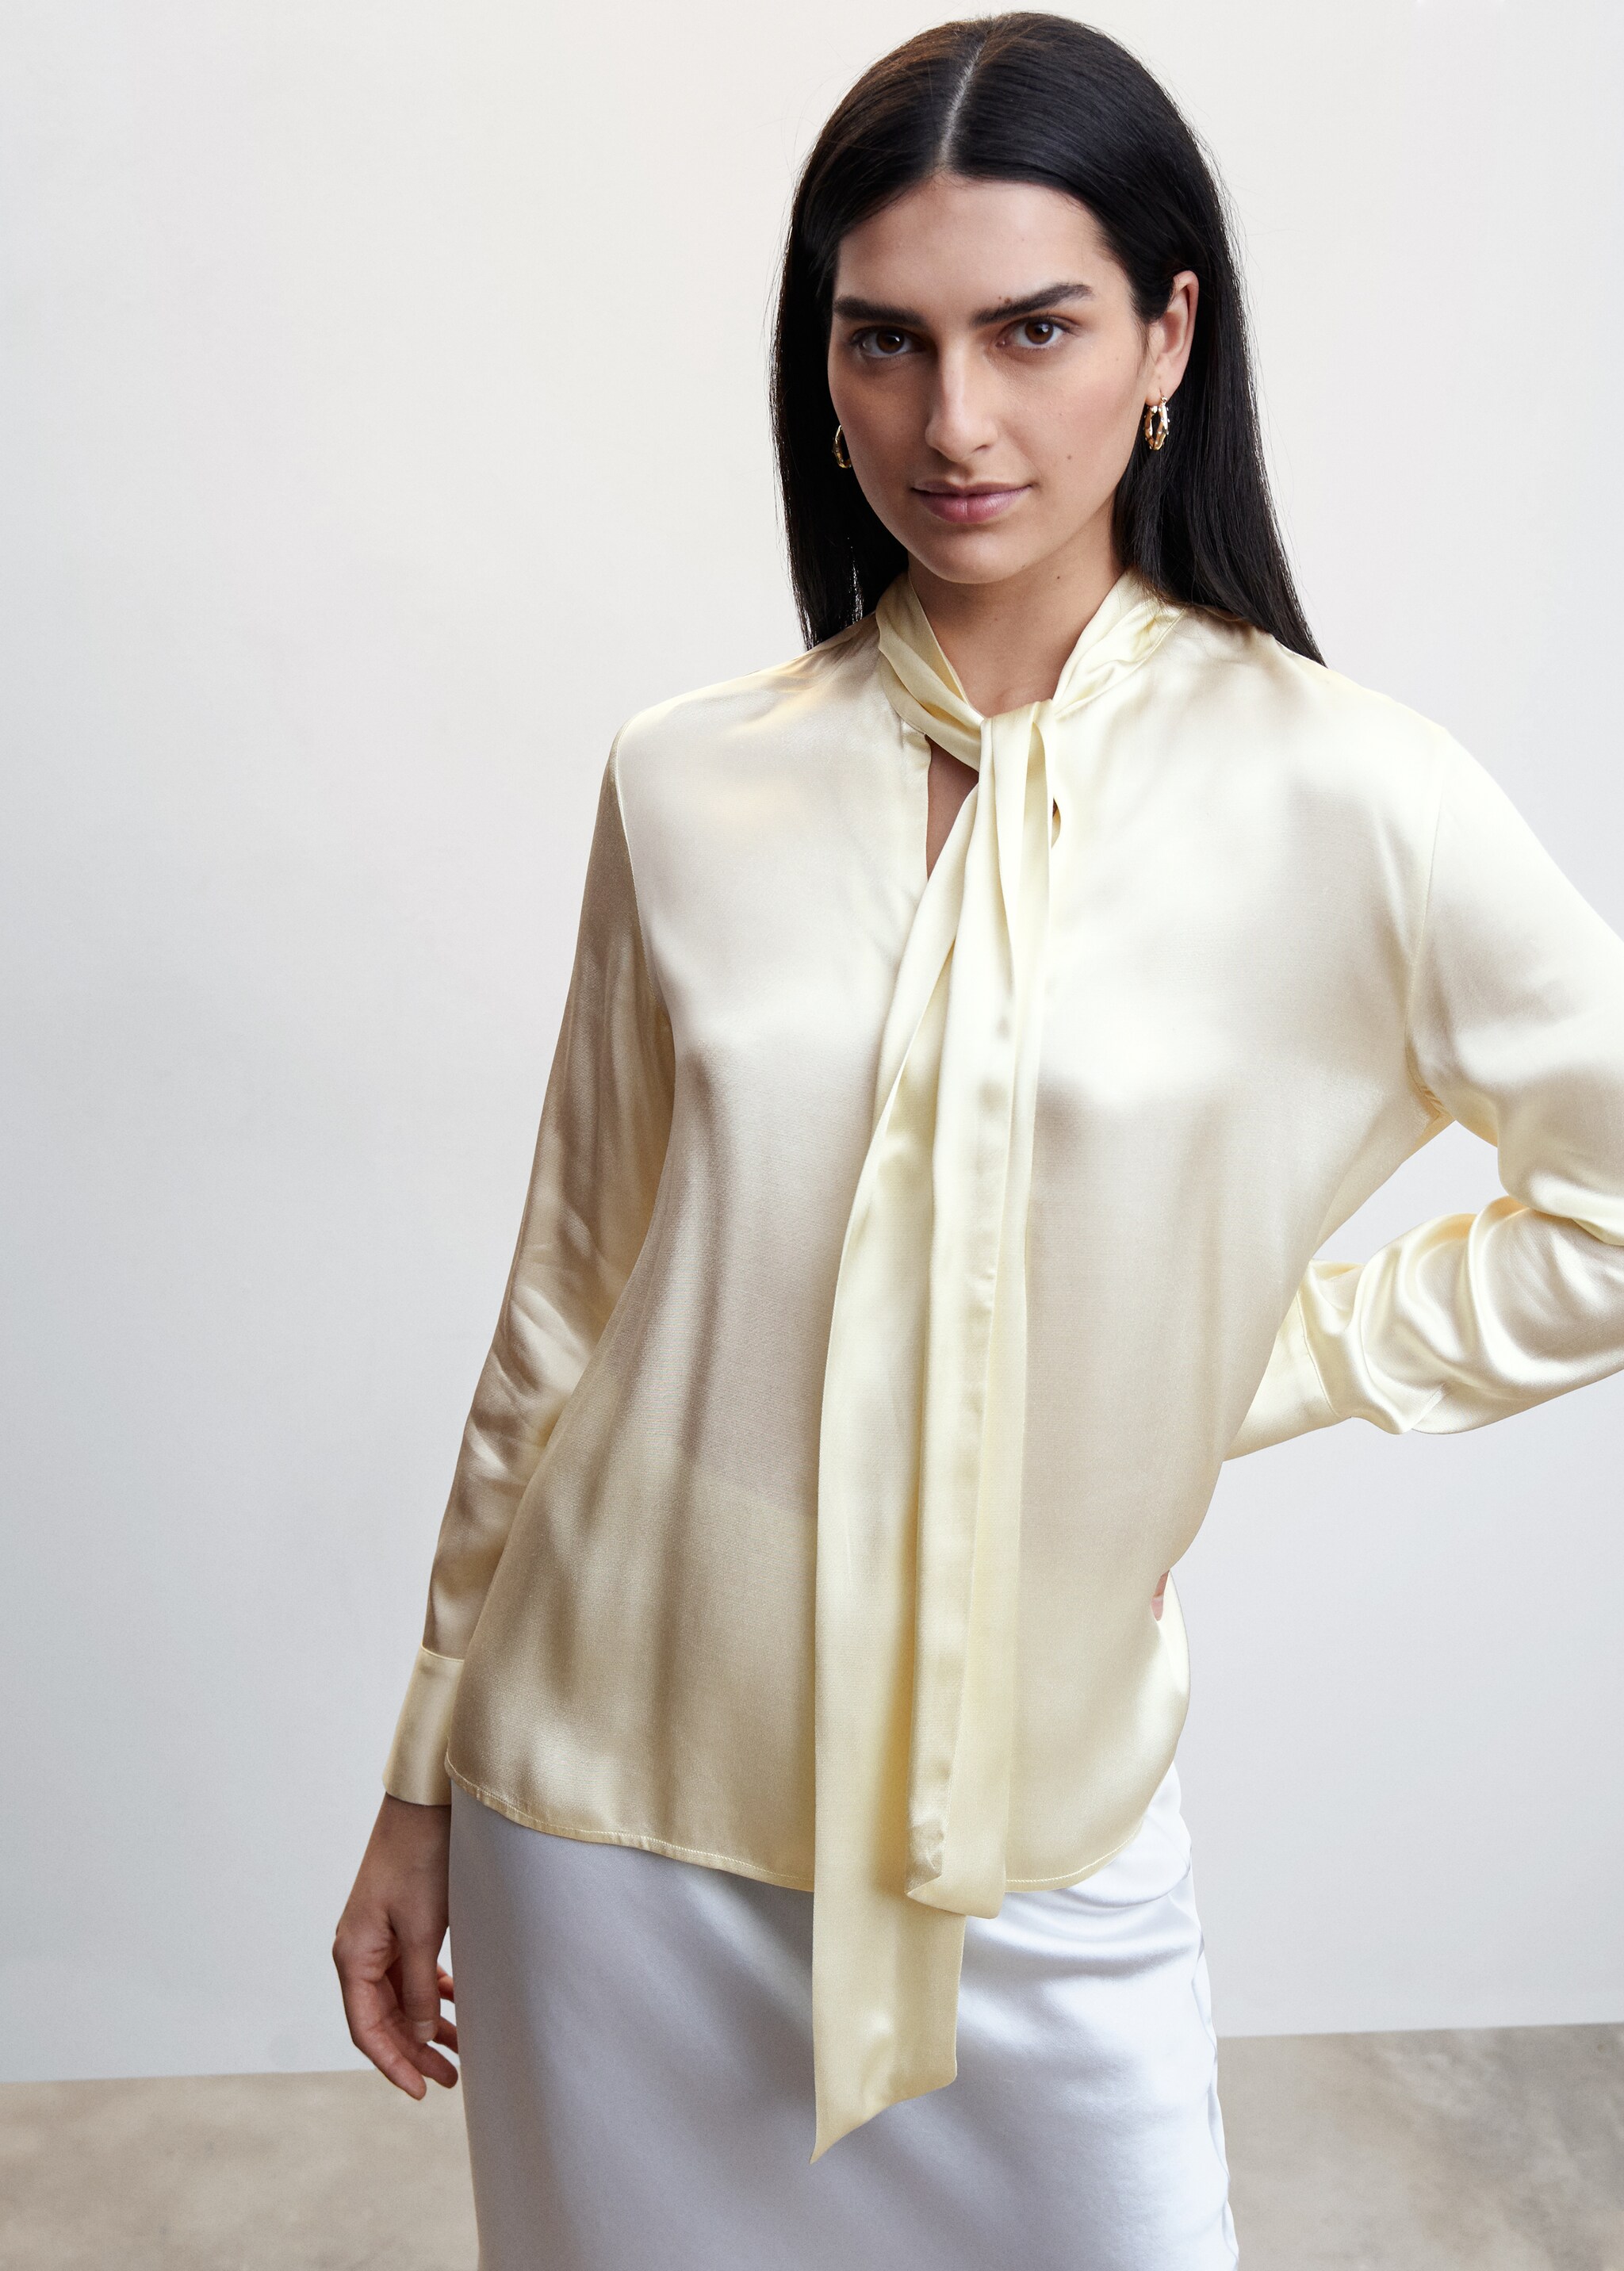 Satin blouse with bow collar - Plan mediu